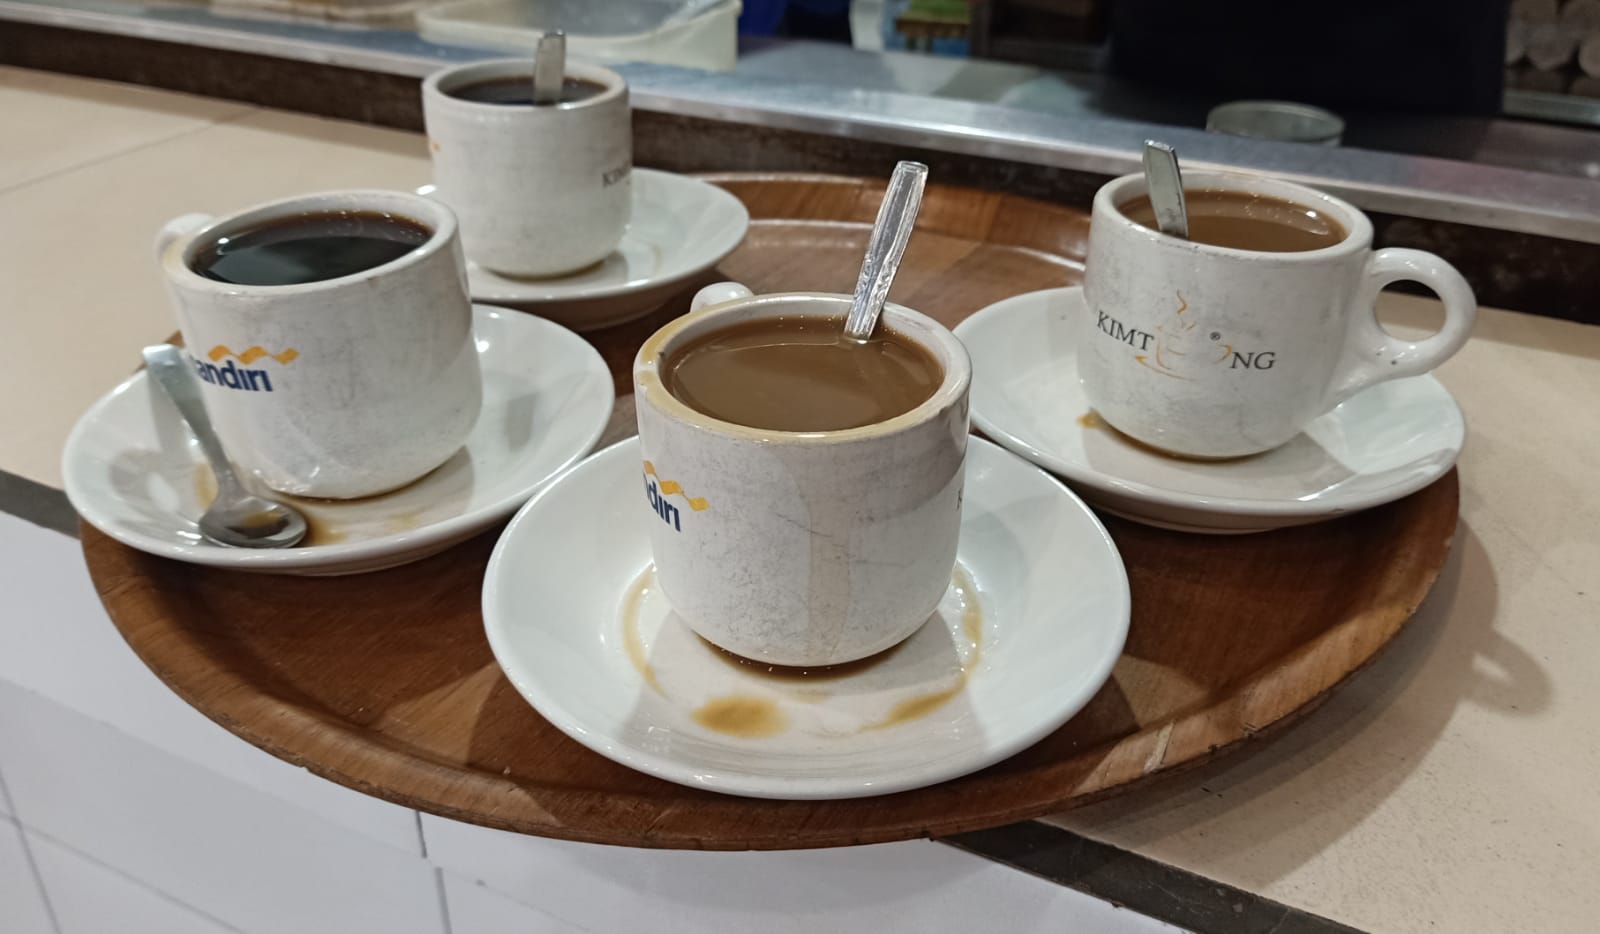 Kopi susu dan kopi O (kopi hitam) jadi varian minuman kopi terlaris di Kedai Kopi Kim Teng, Pekanbaru, Selasa, 10 Mei 2022.